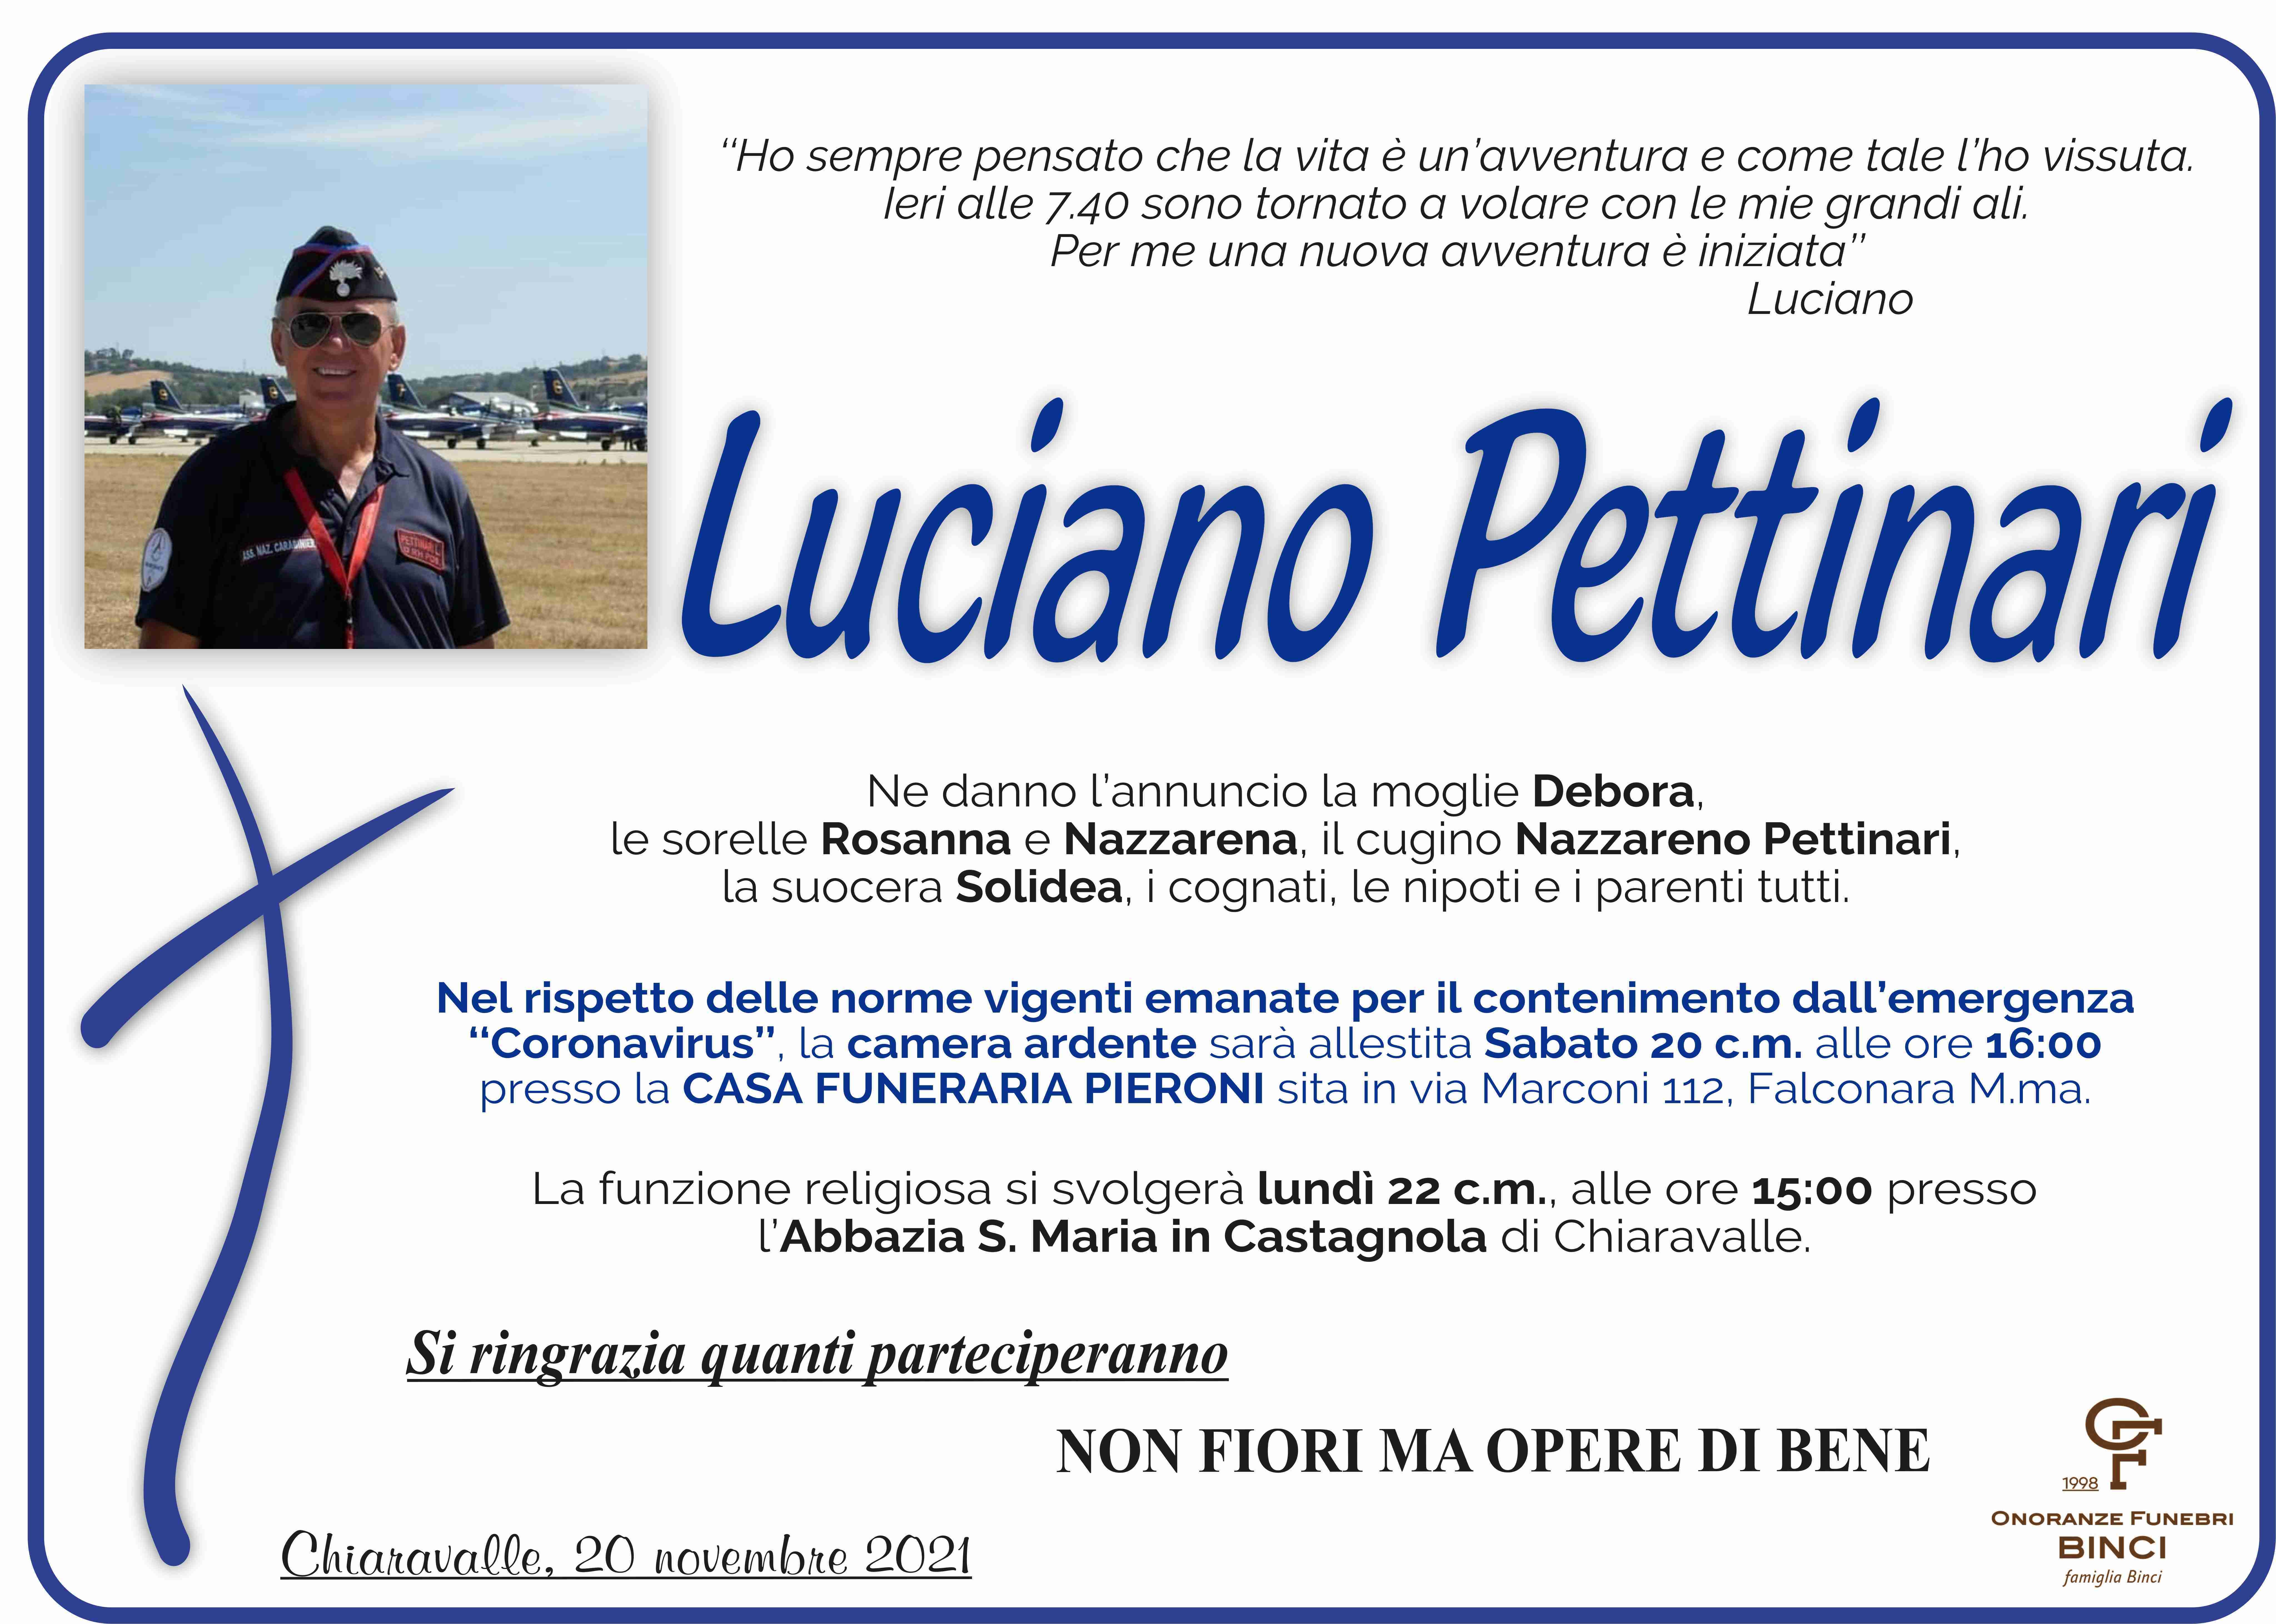 Luciano Pettinari